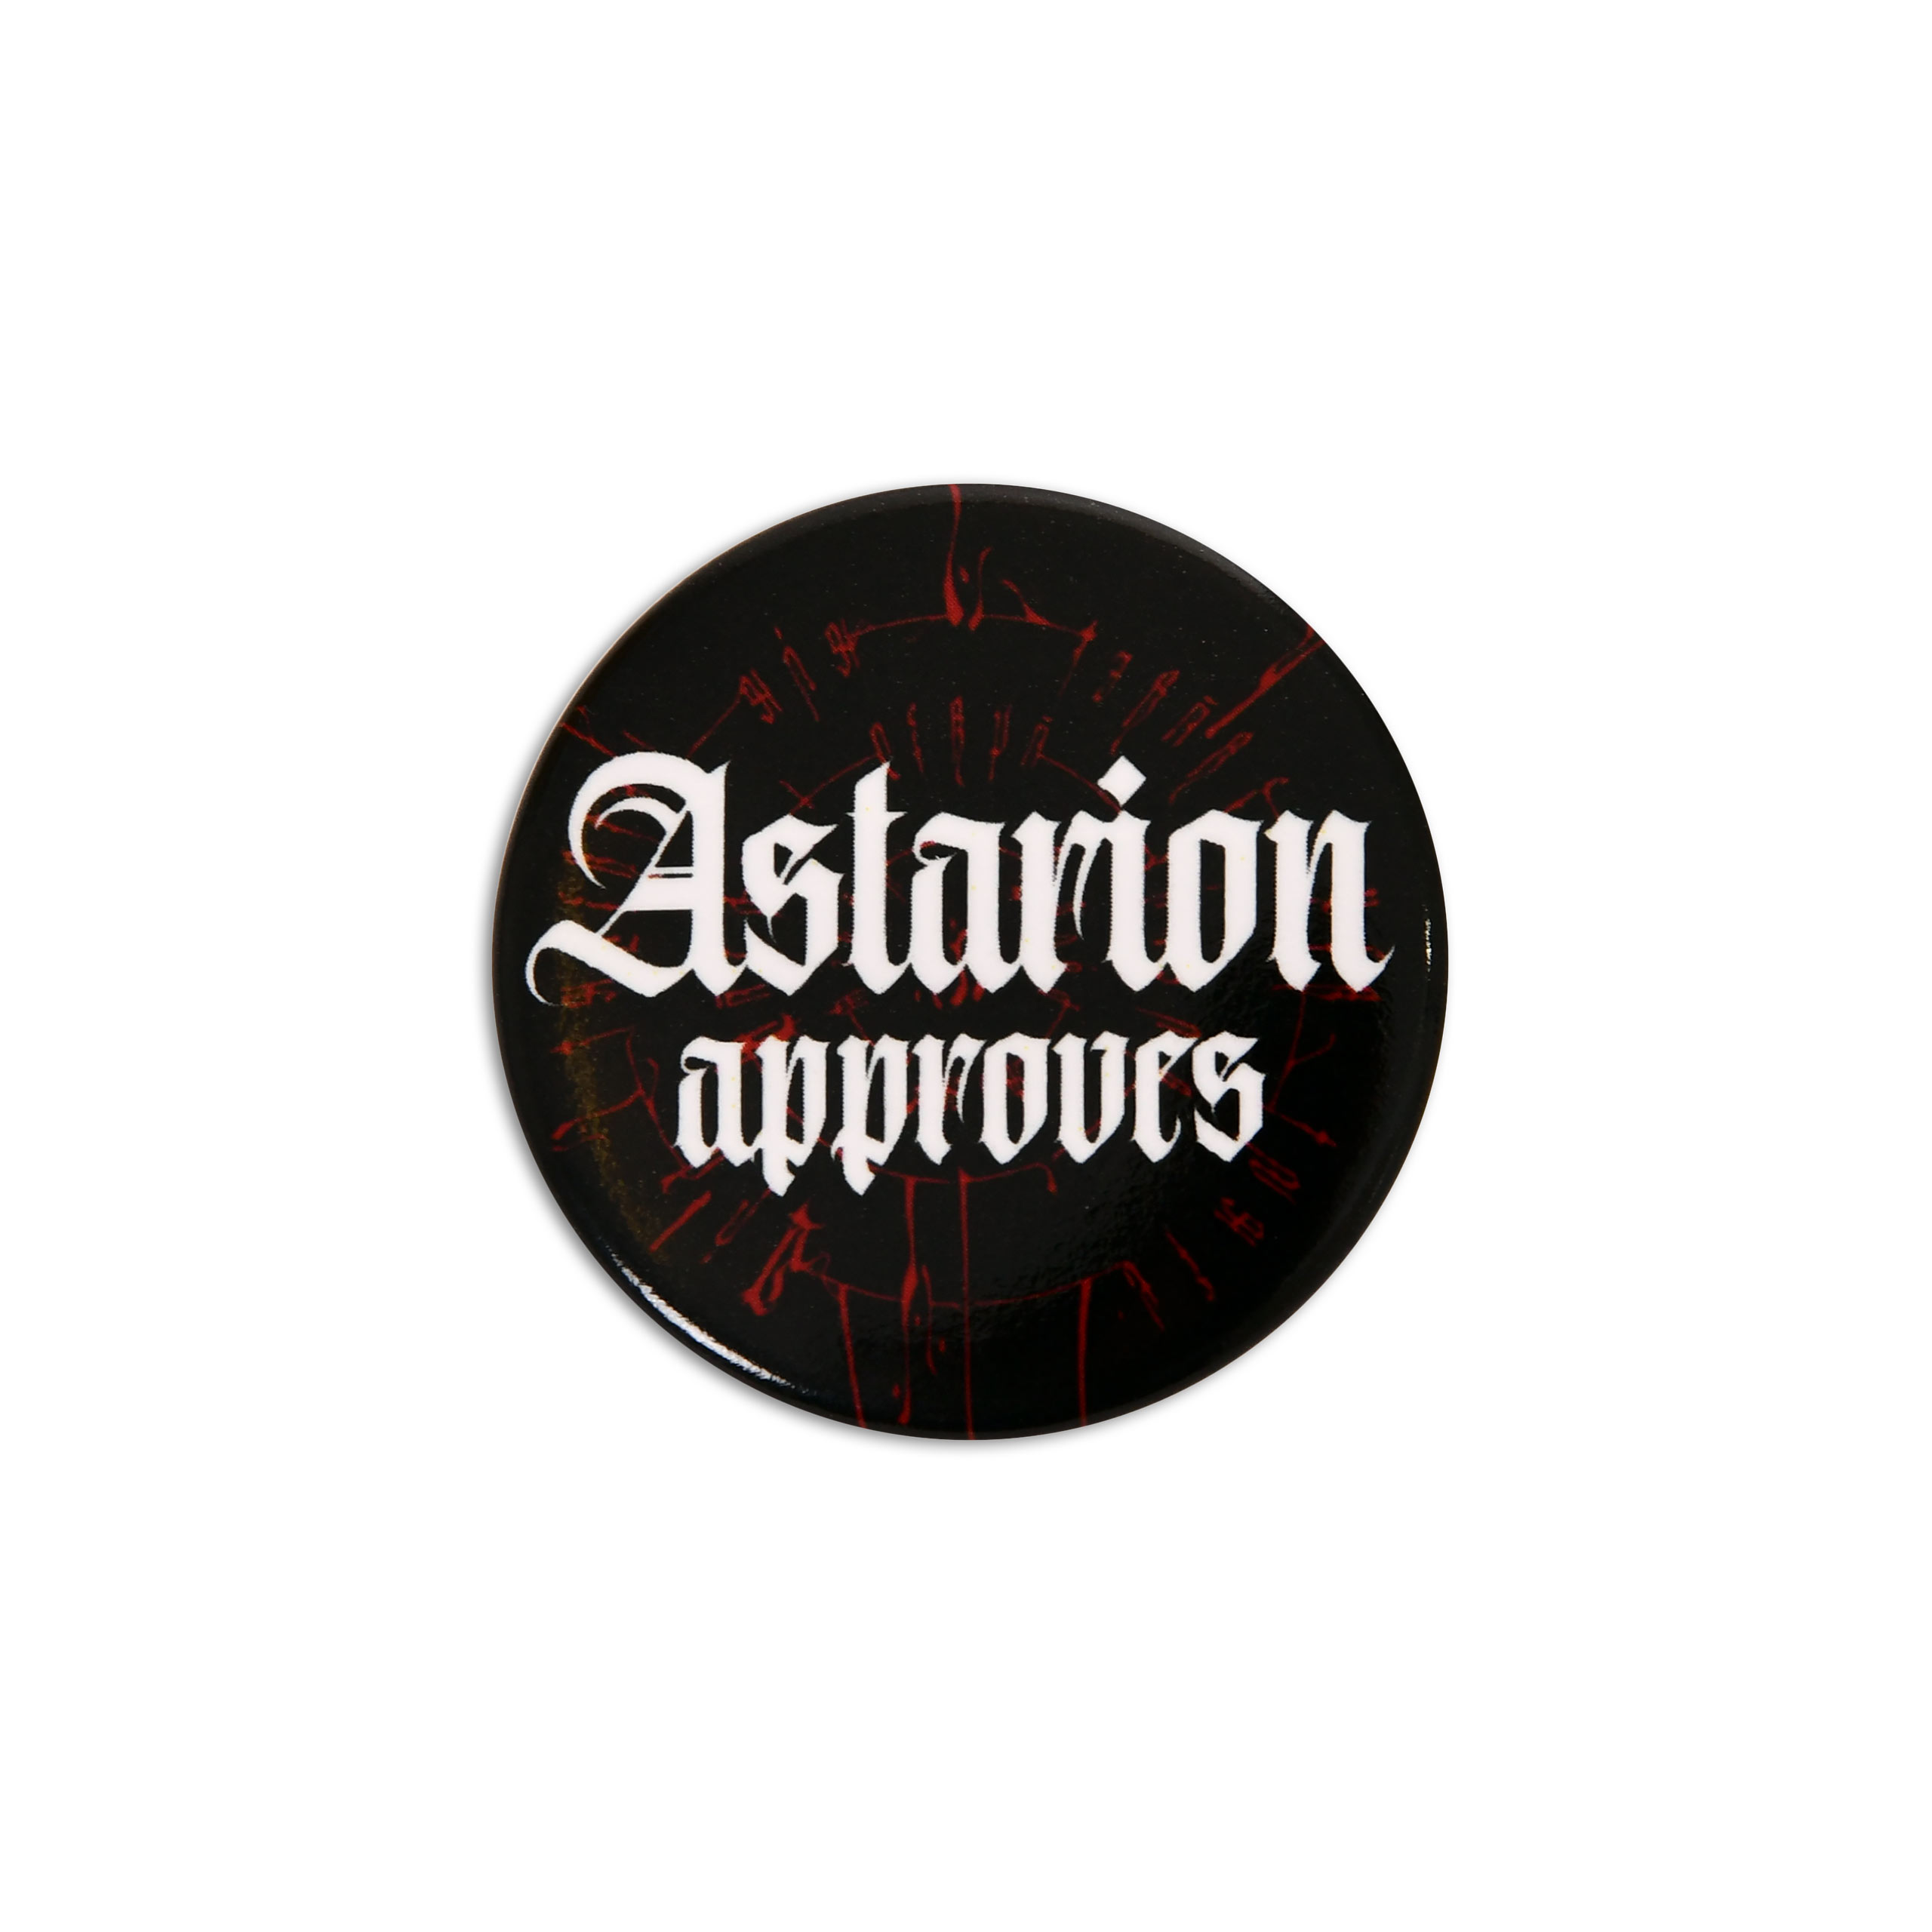 Astarion Approves Button für Baldur's Gate Fans